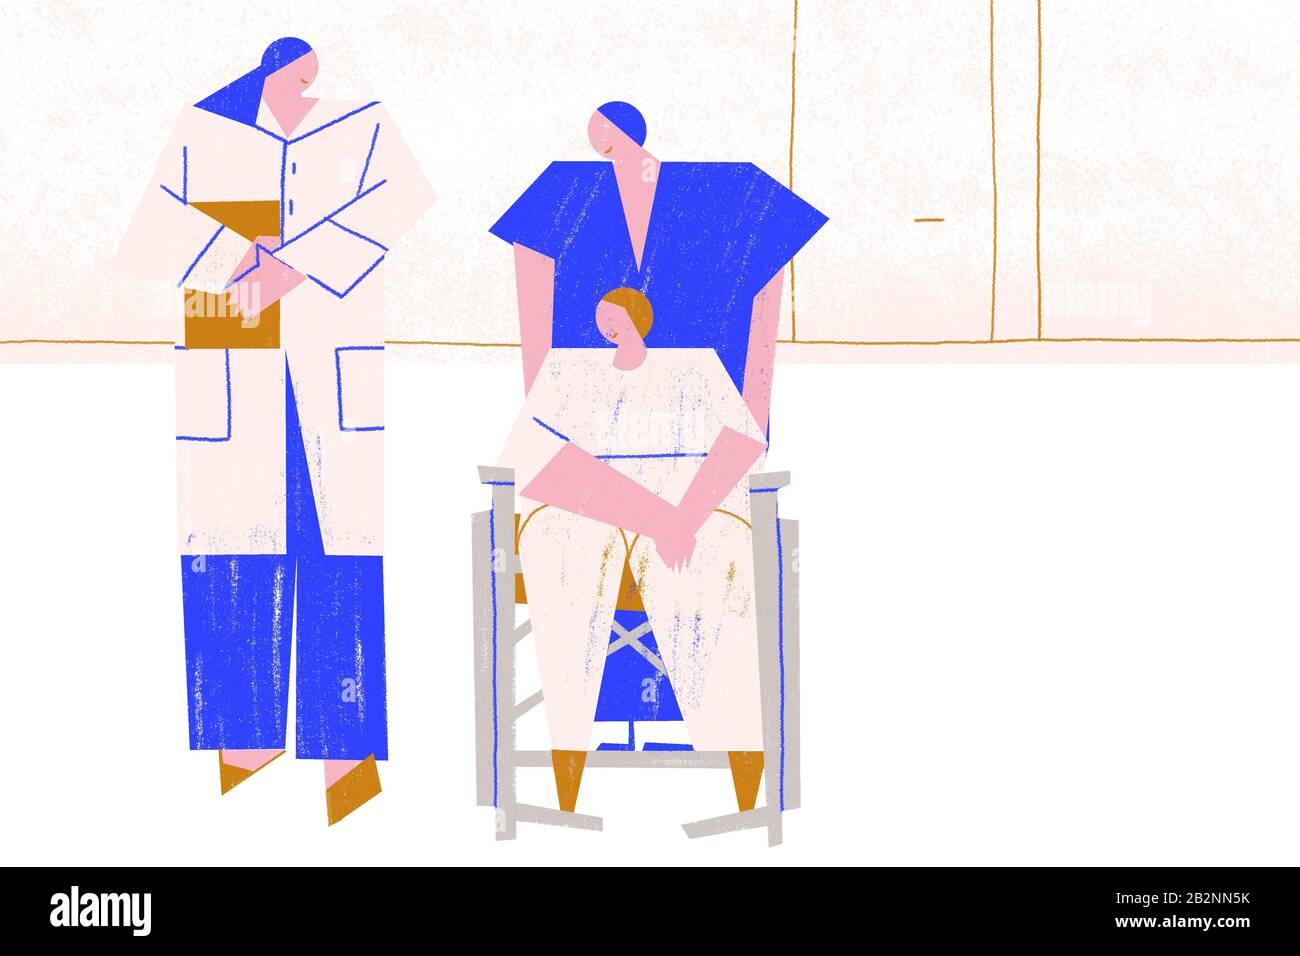 Arzt und Pflegepersonal versorgen einen Patienten in einer Rollstuhl-Hilfsbereitschaft. Gesundheitswesen. Blau. Horizontal. Stockfoto